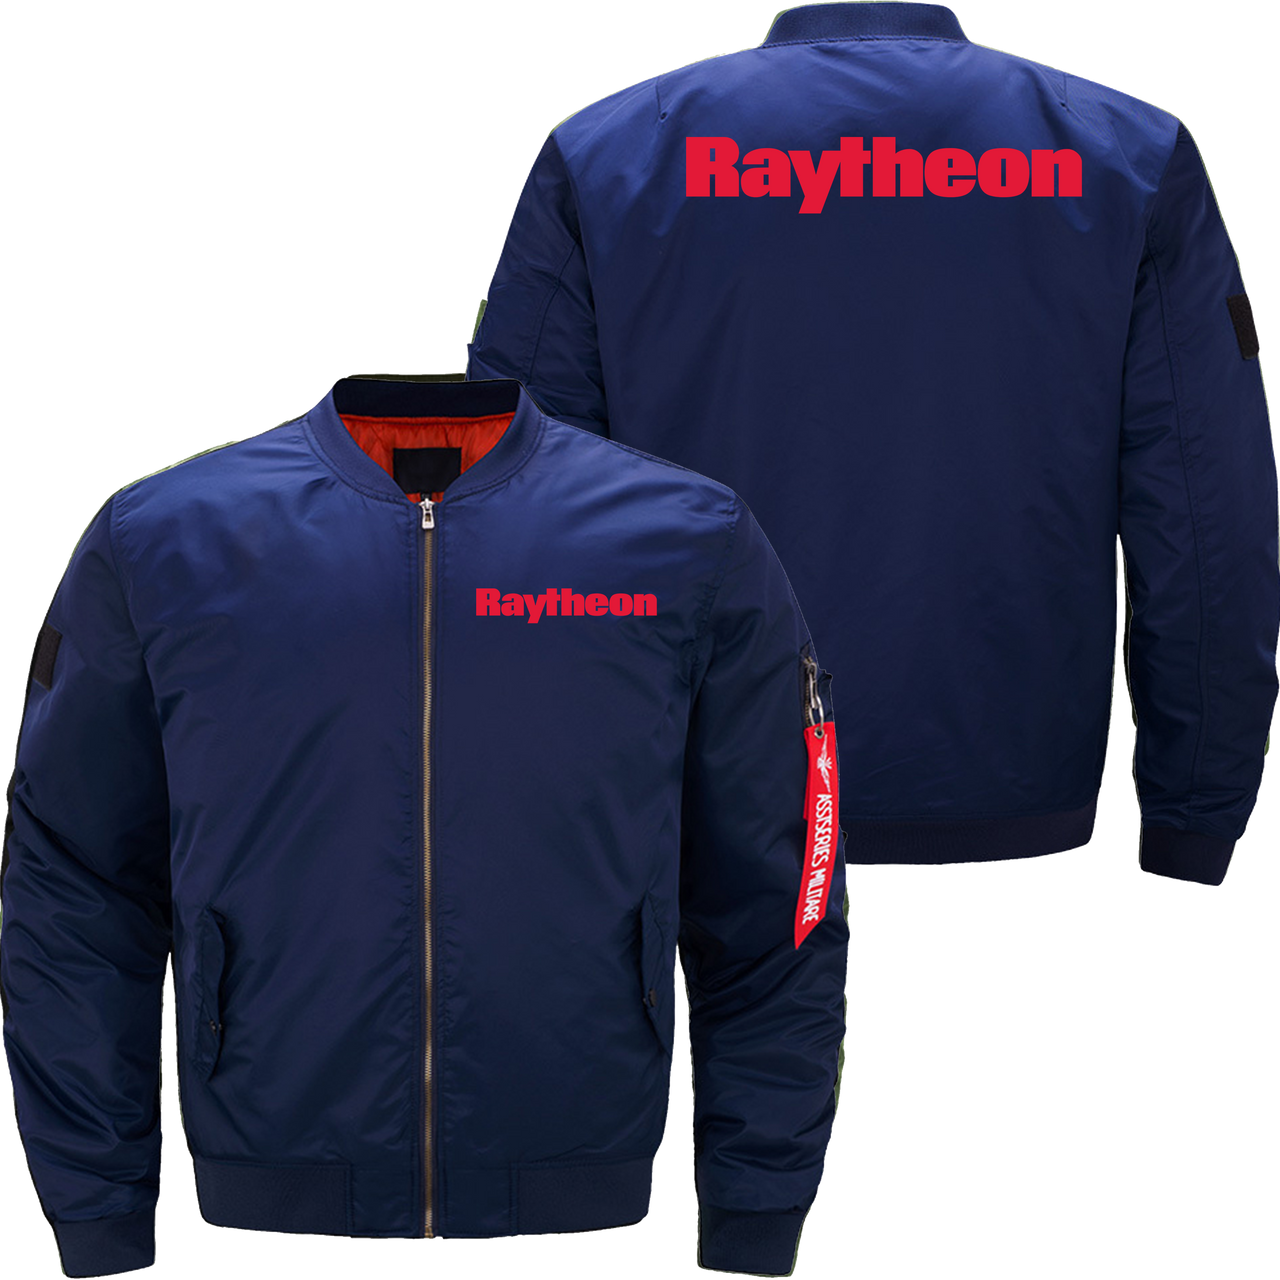 Raytheon Jacket